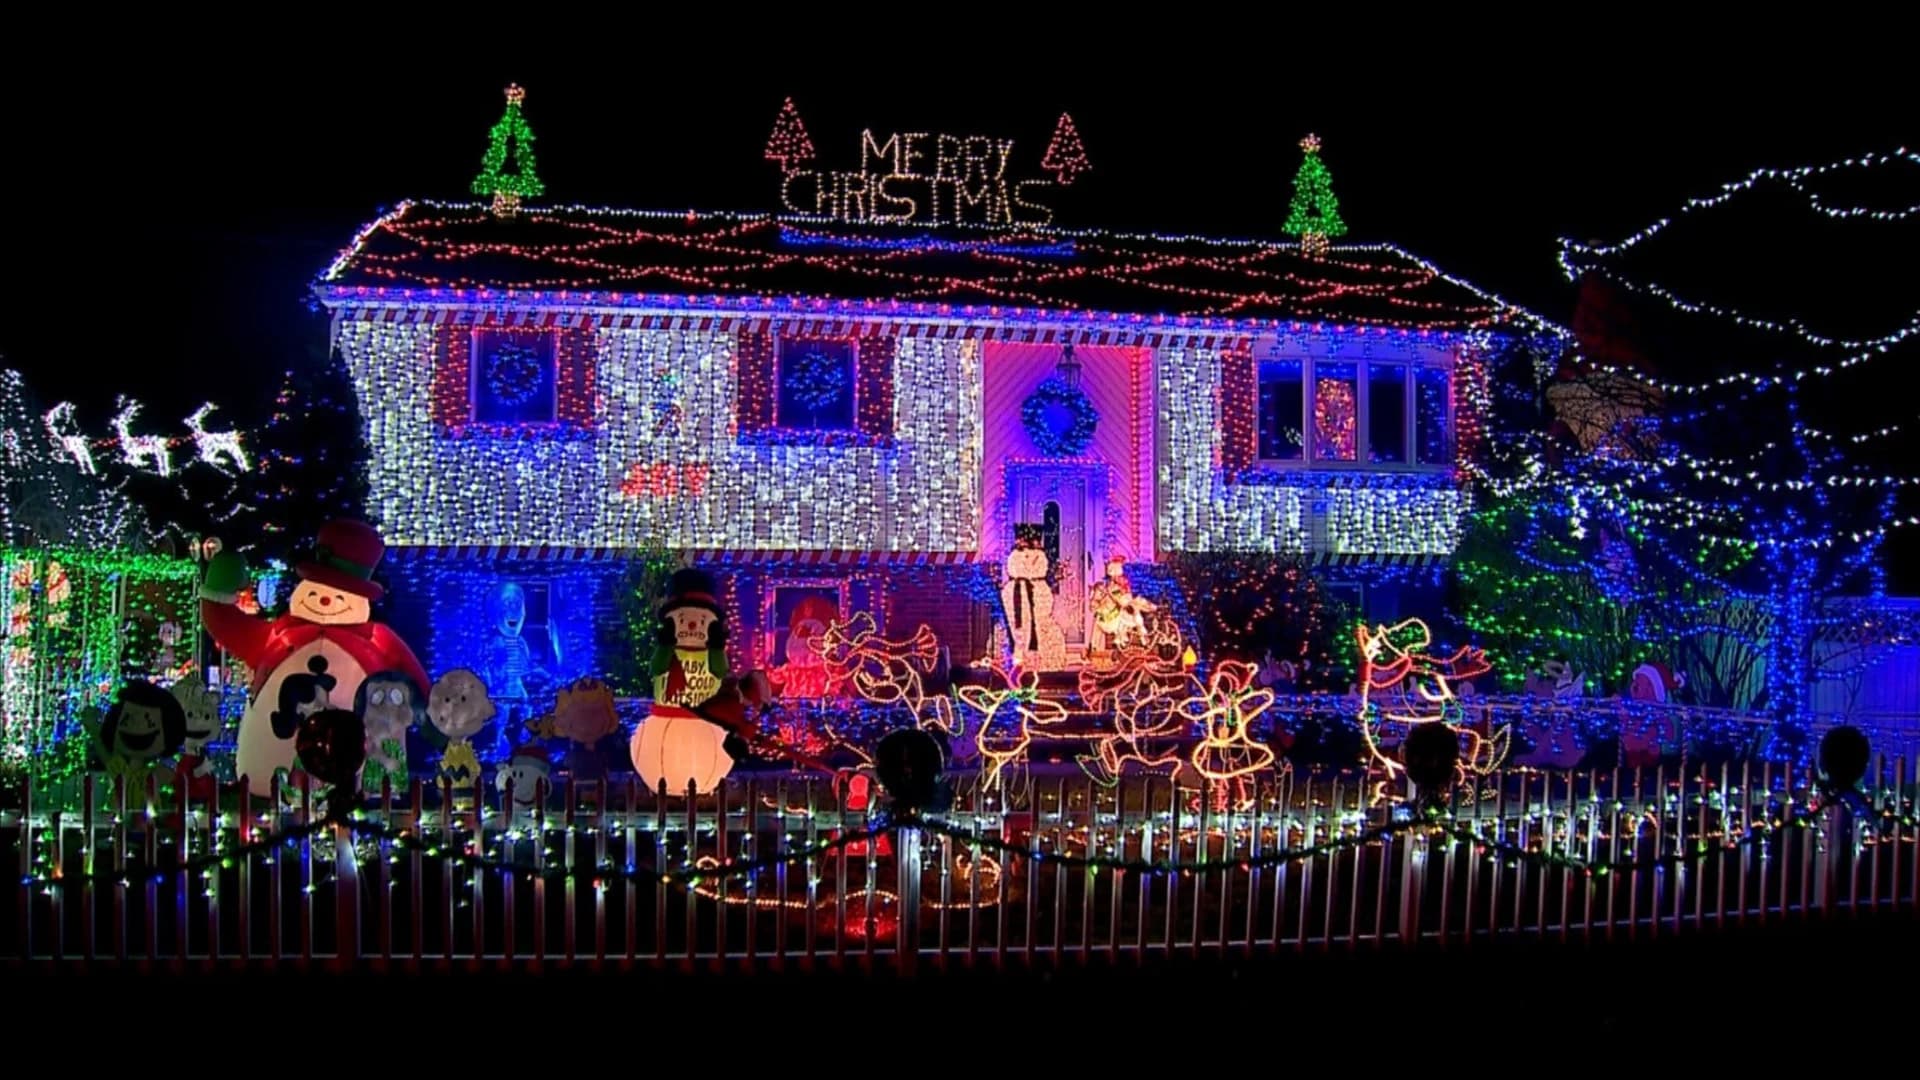 Photos: Local Christmas light displays across New Jersey